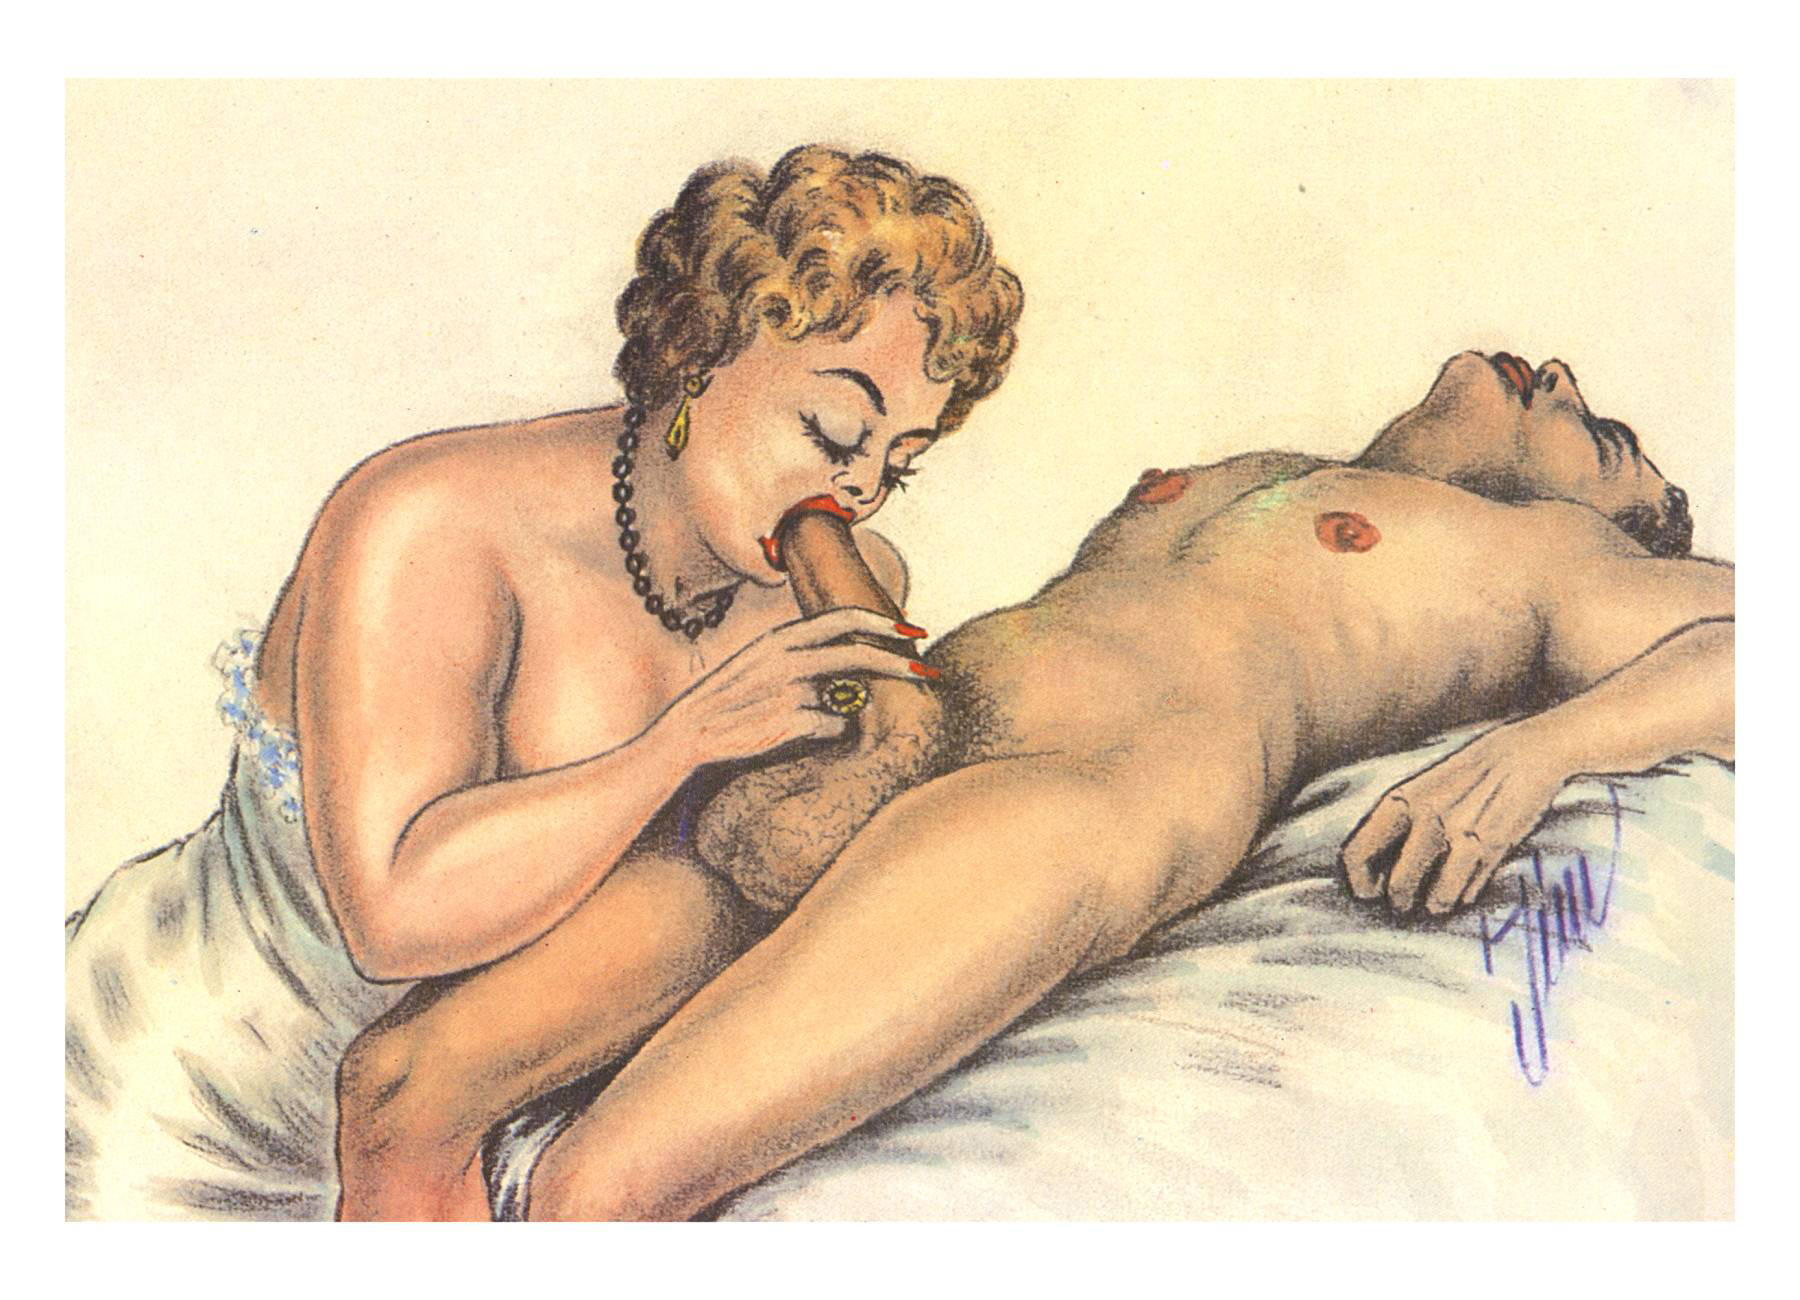 Best Vintage Sex Toons - Vintage Cartoons Gallery